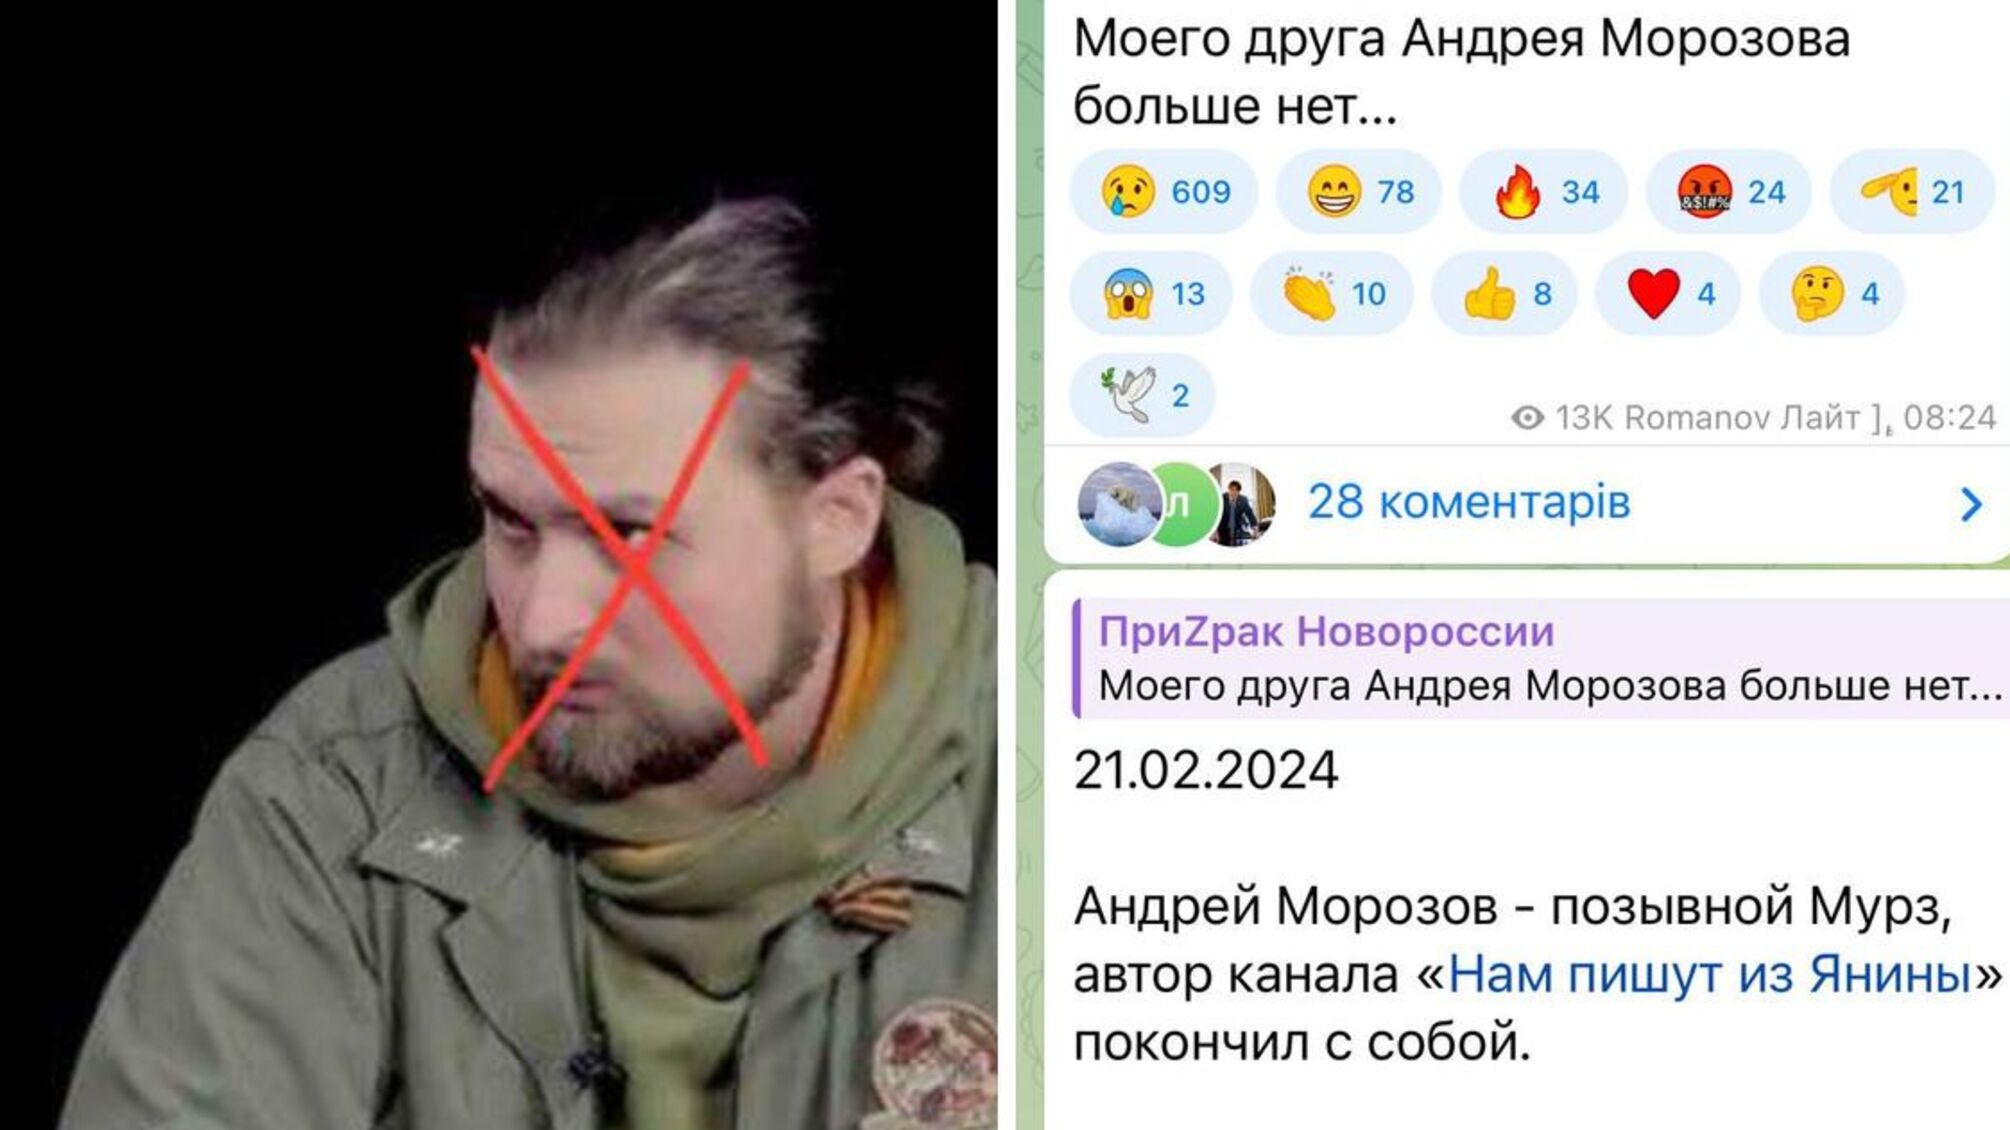 Російський пропагандист 'Мурз' застрелився після розкриття даних про втрати у бою за Авдіївку